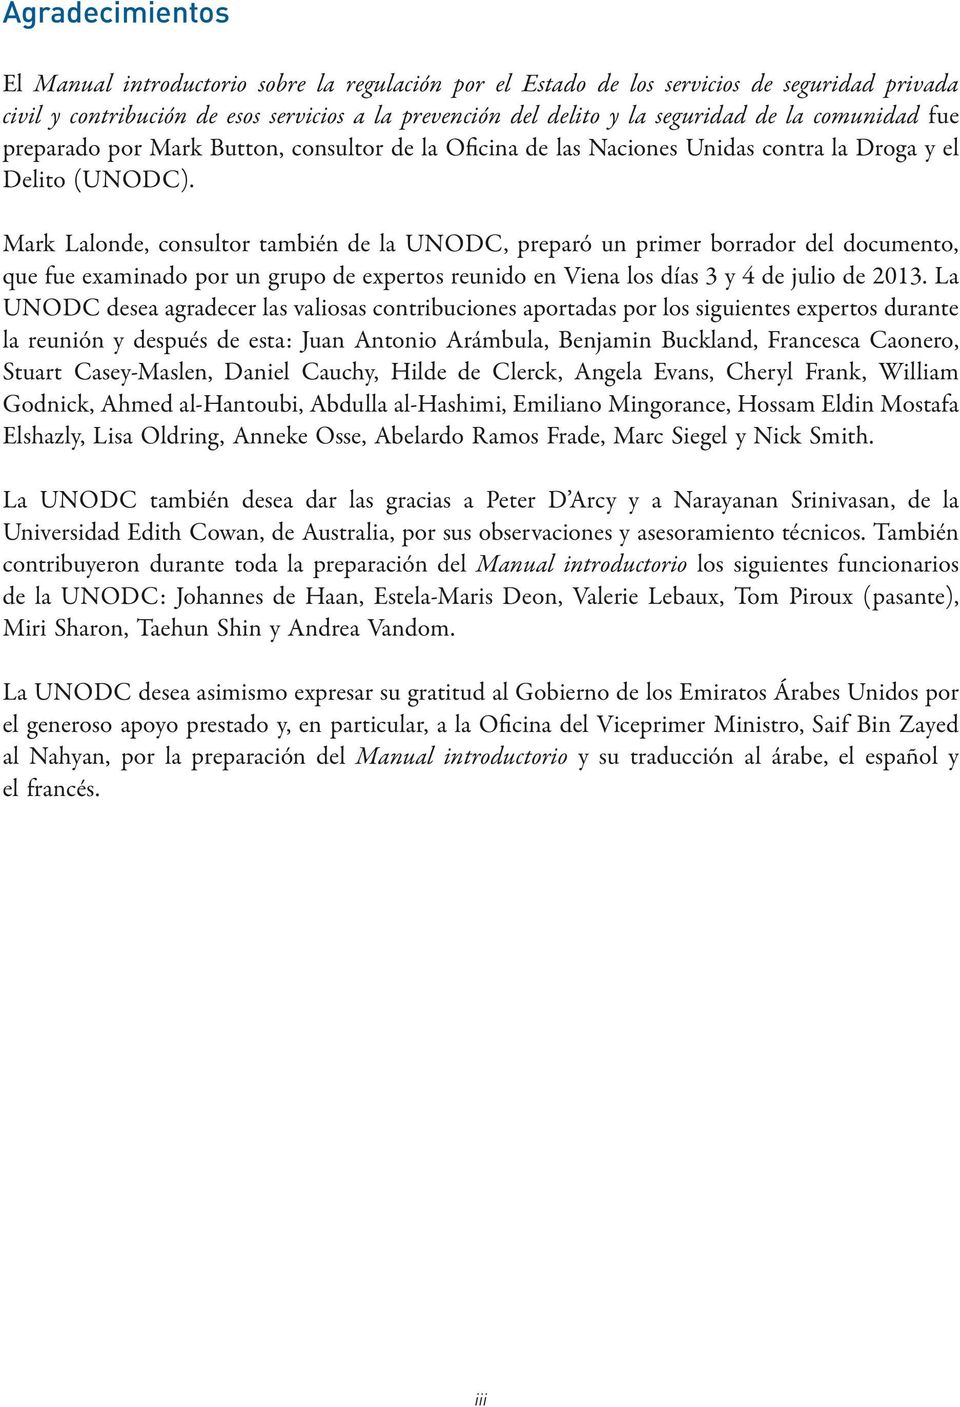 Mark Lalonde, consultor también de la UNODC, preparó un primer borrador del documento, que fue examinado por un grupo de expertos reunido en Viena los días 3 y 4 de julio de 2013.